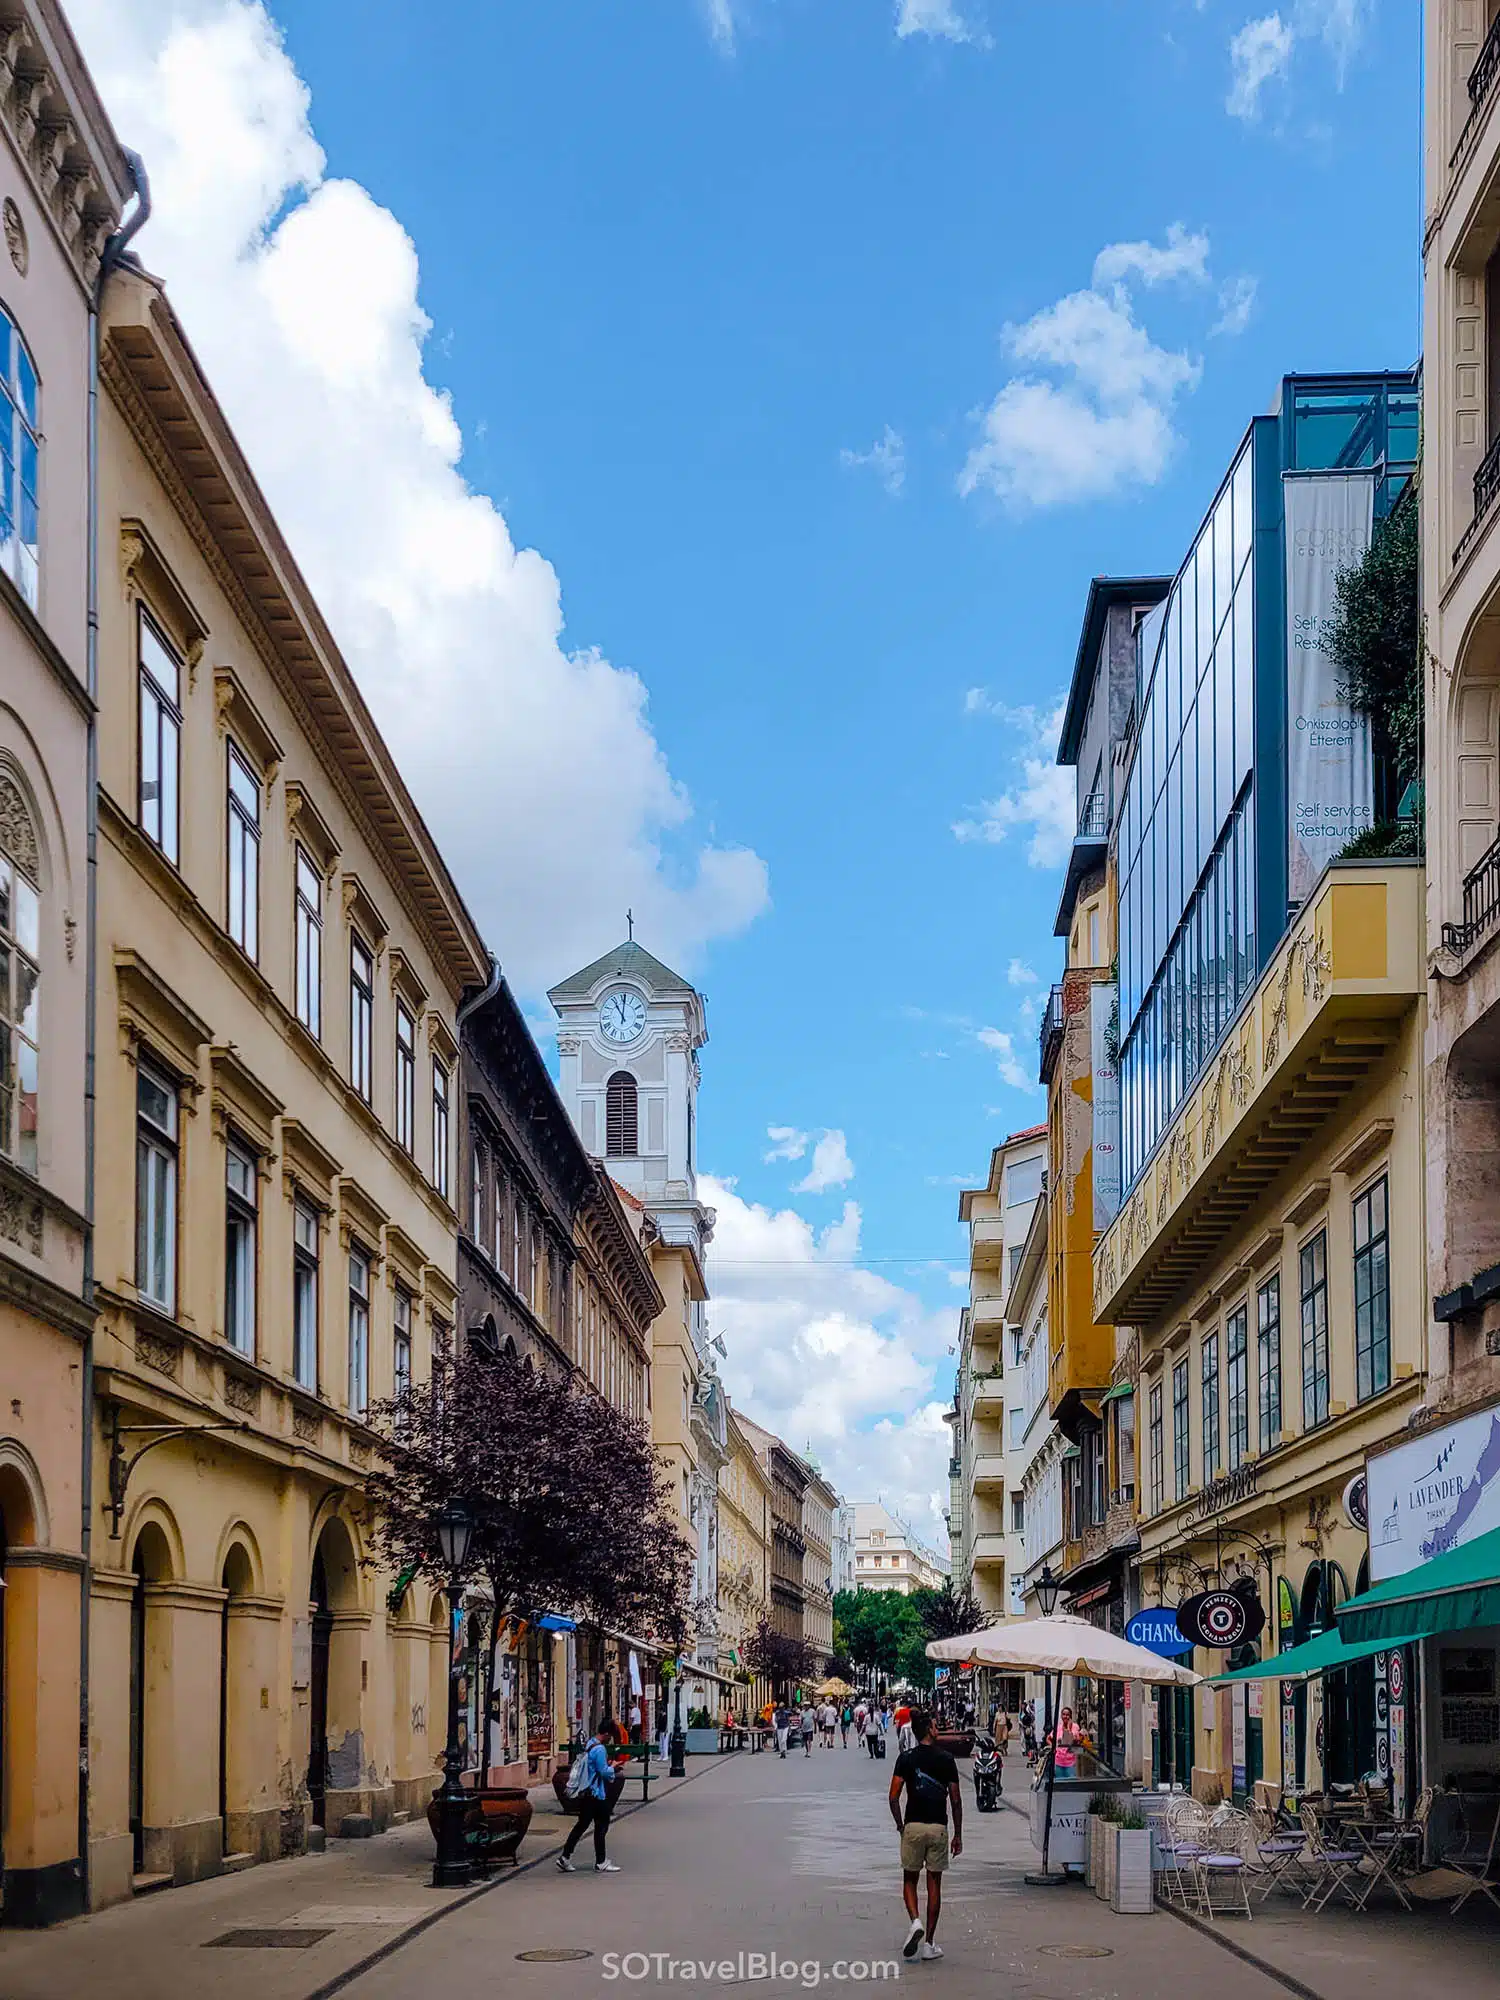 שופינג בבודפשט - רחוב ואצי אוצה